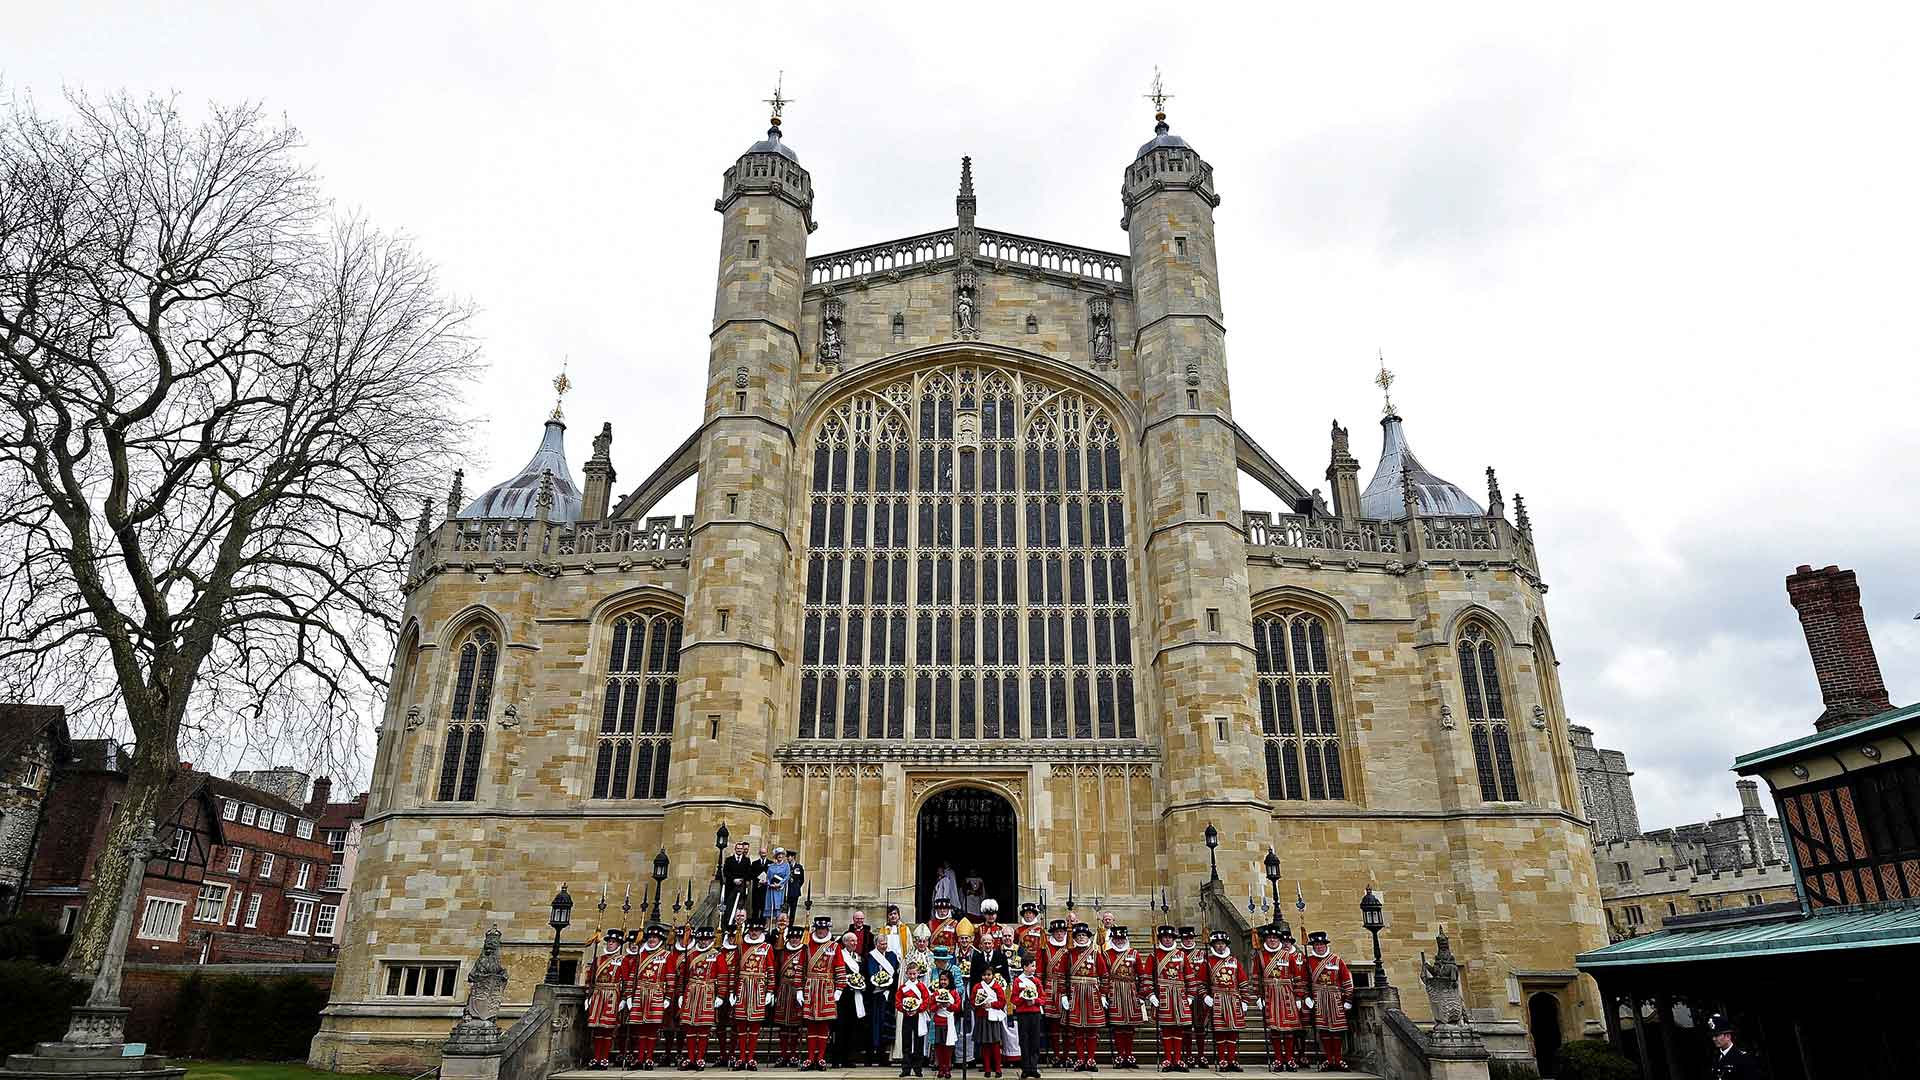 La boda del príncipe Harry y Meghan Markle será en mayo en el castillo de Windsor